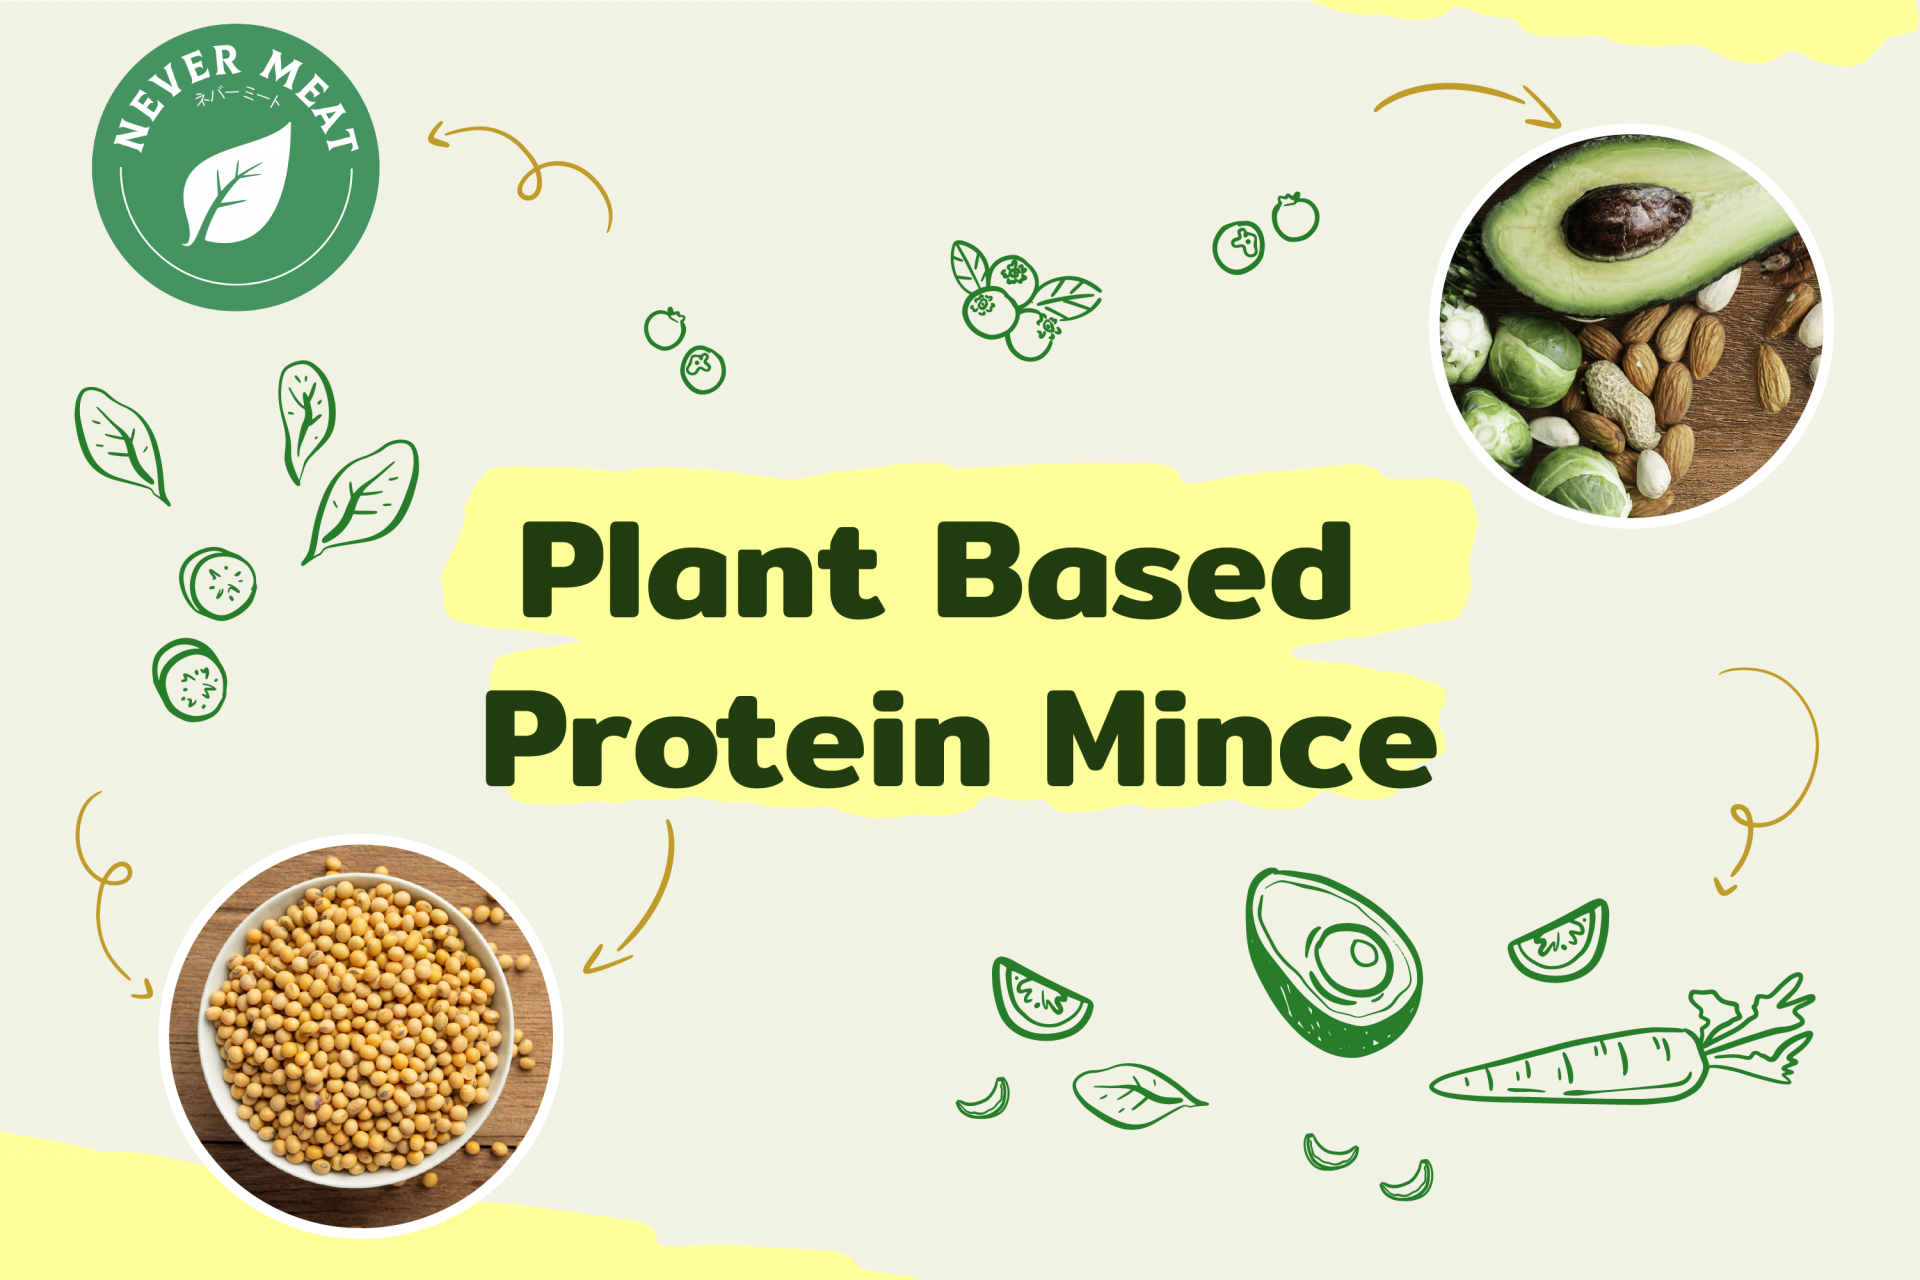 โปรตีนจากพืช แหล่งโปรตีนแห่งใหม่ที่ควรรู้ก่อนรับประทาน 